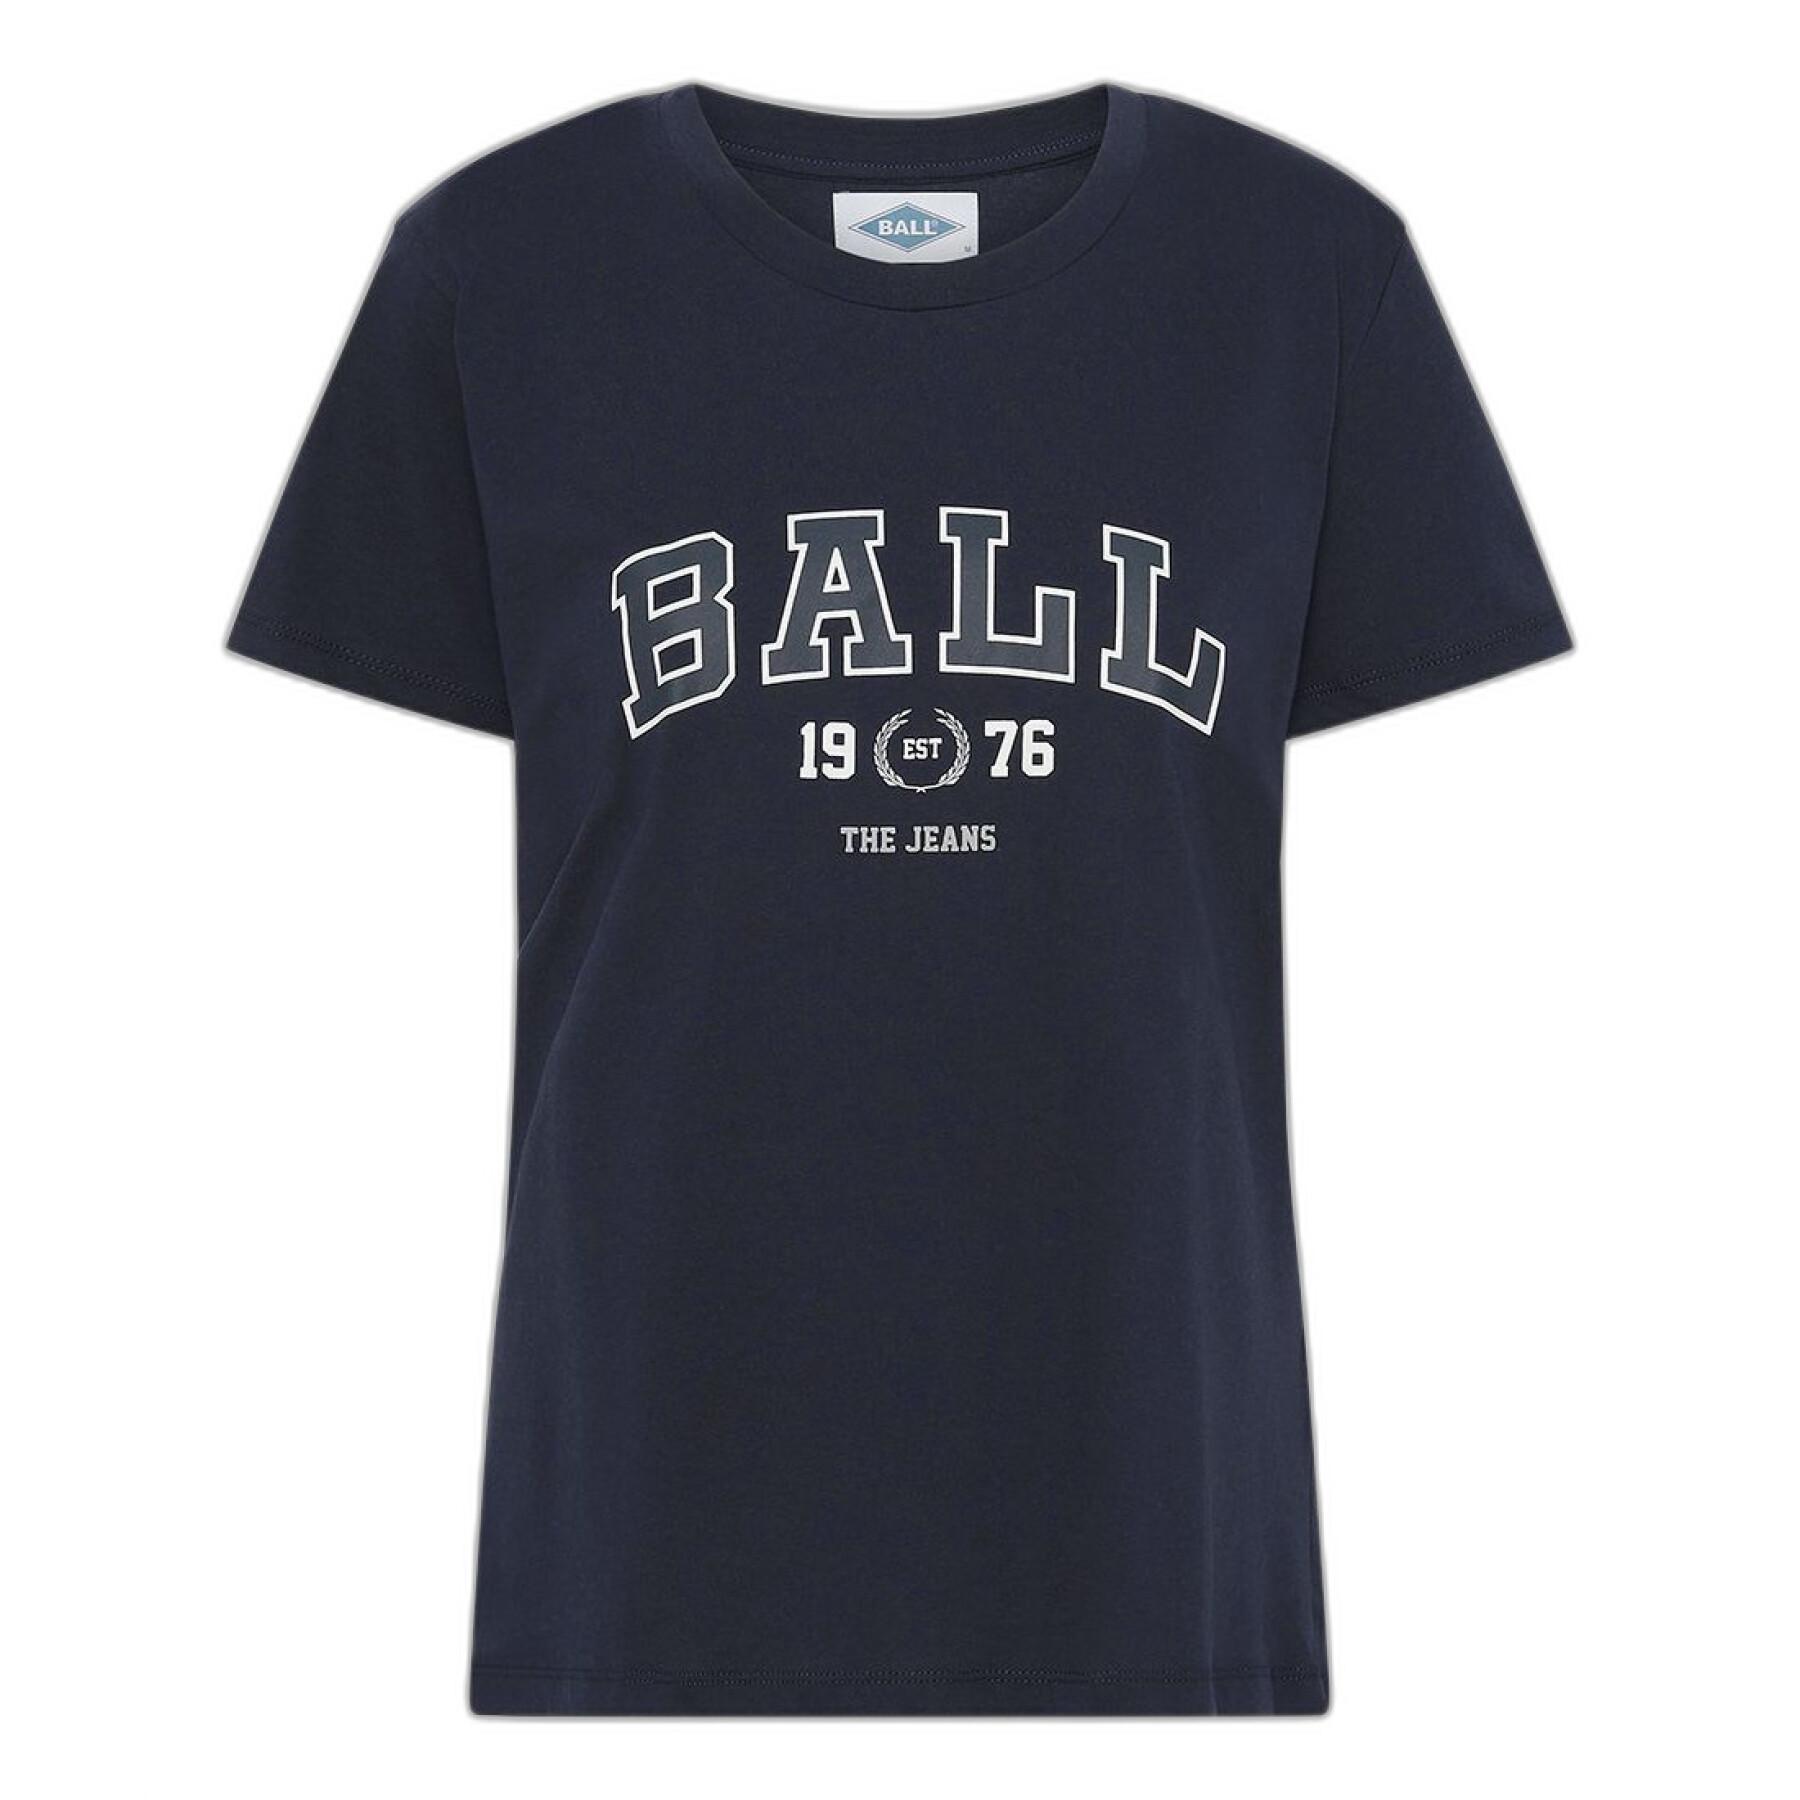 Koszulka damska Ball J. Elway